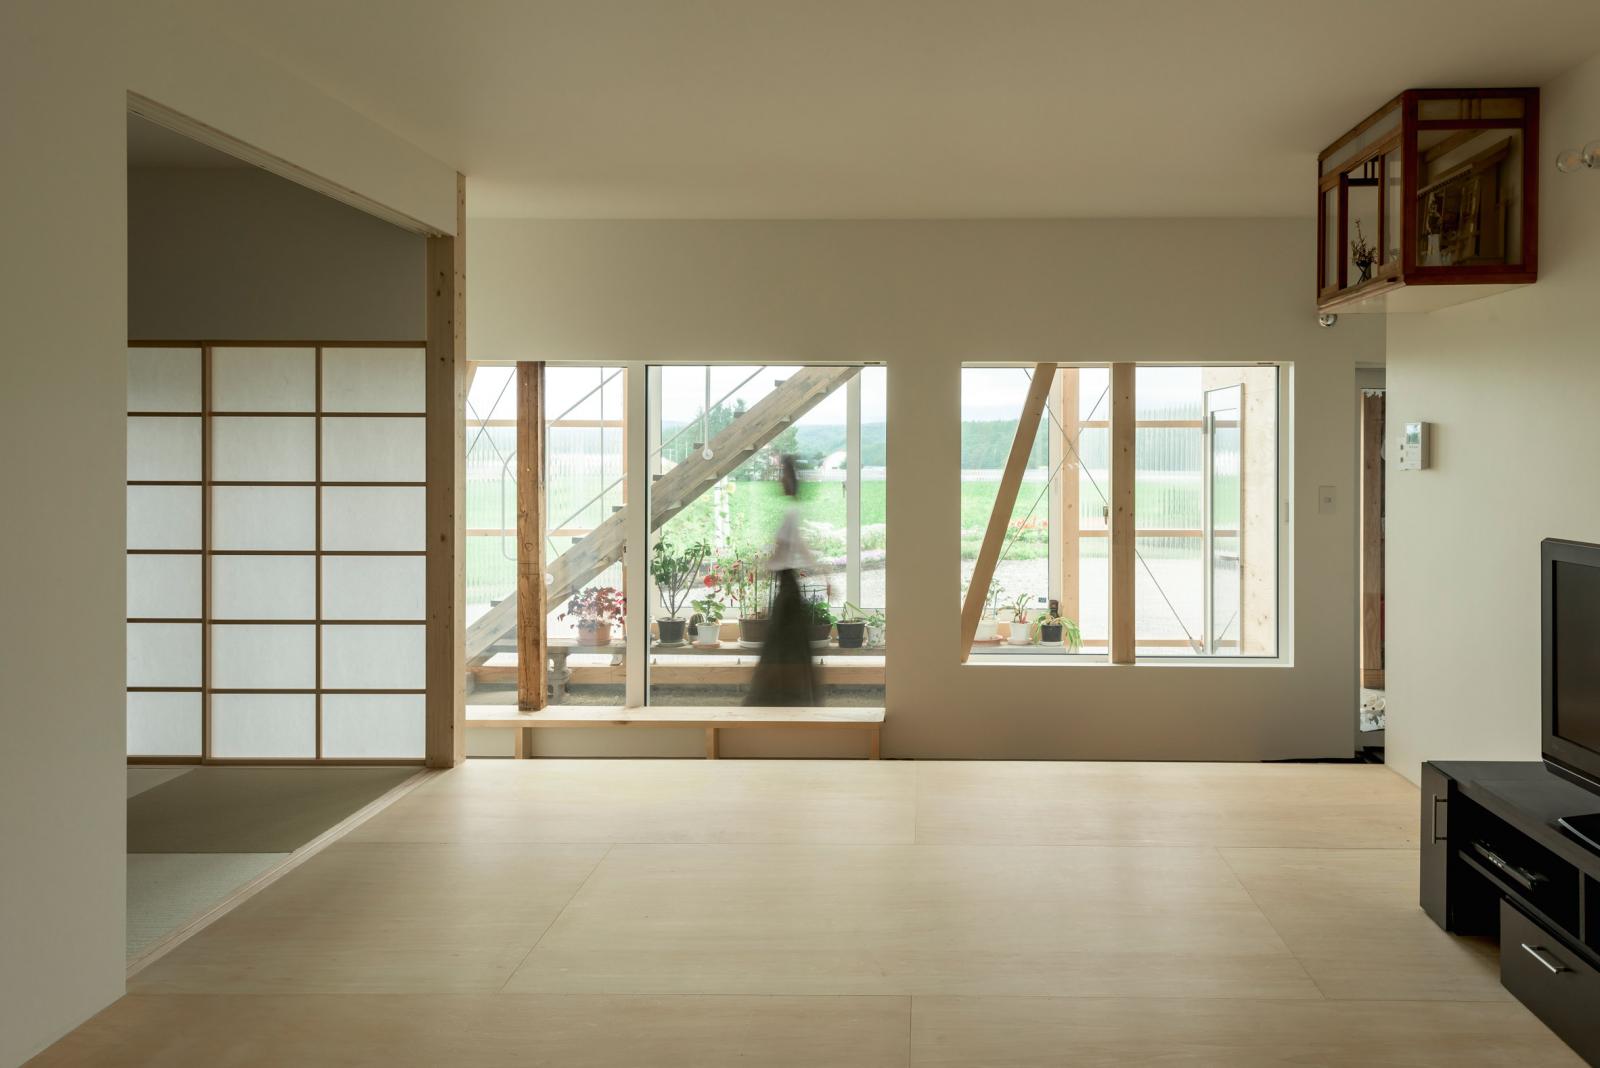 Hình ảnh bên trong một căn phòng thuộc ngôi nhà 2 tầng ở Nhật với rất ít đồ nội thất, sàn gỗ, cửa giấy đặc trưng.